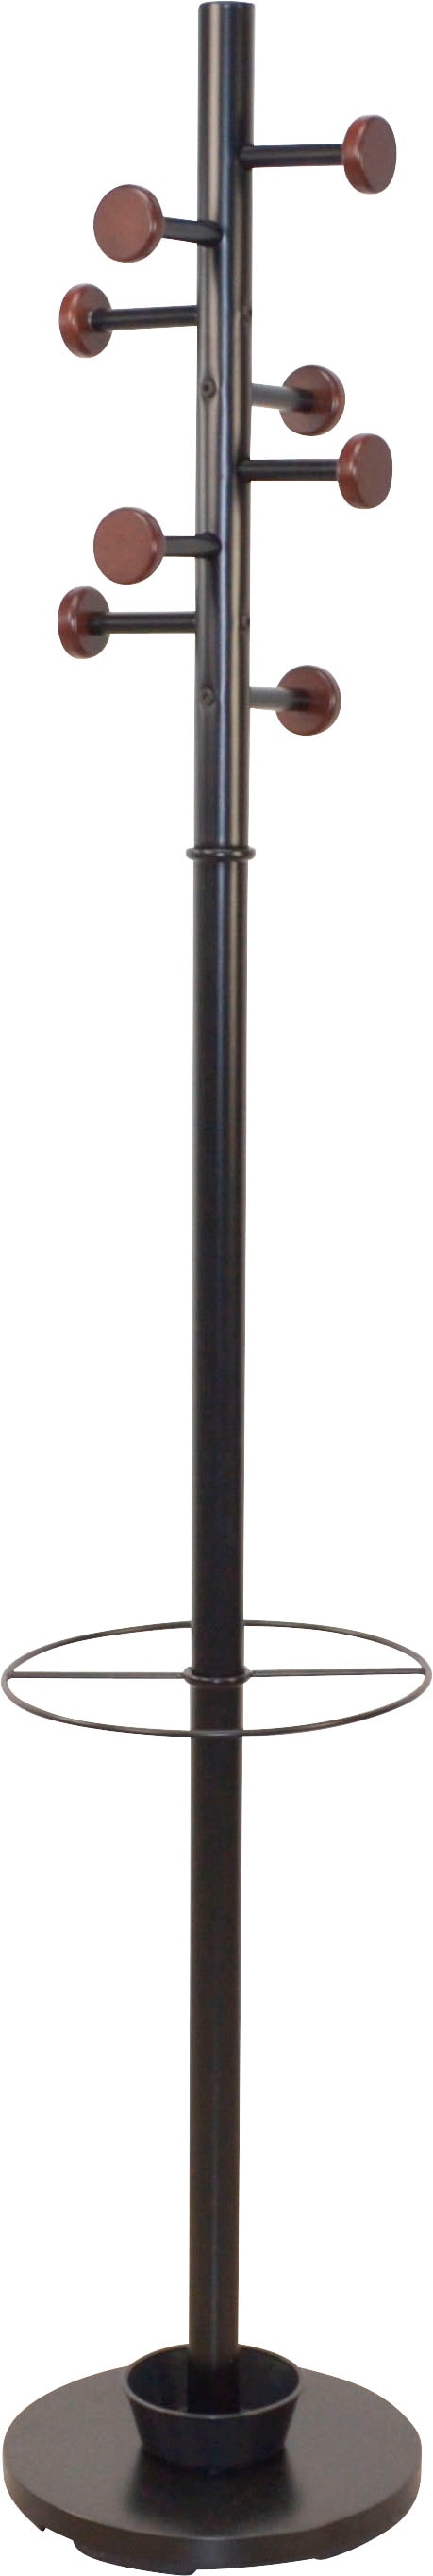 INOSIGN Garderobenständer, aus Metall, Höhe 172 cm, 8 Haken, mit Schirmhalter